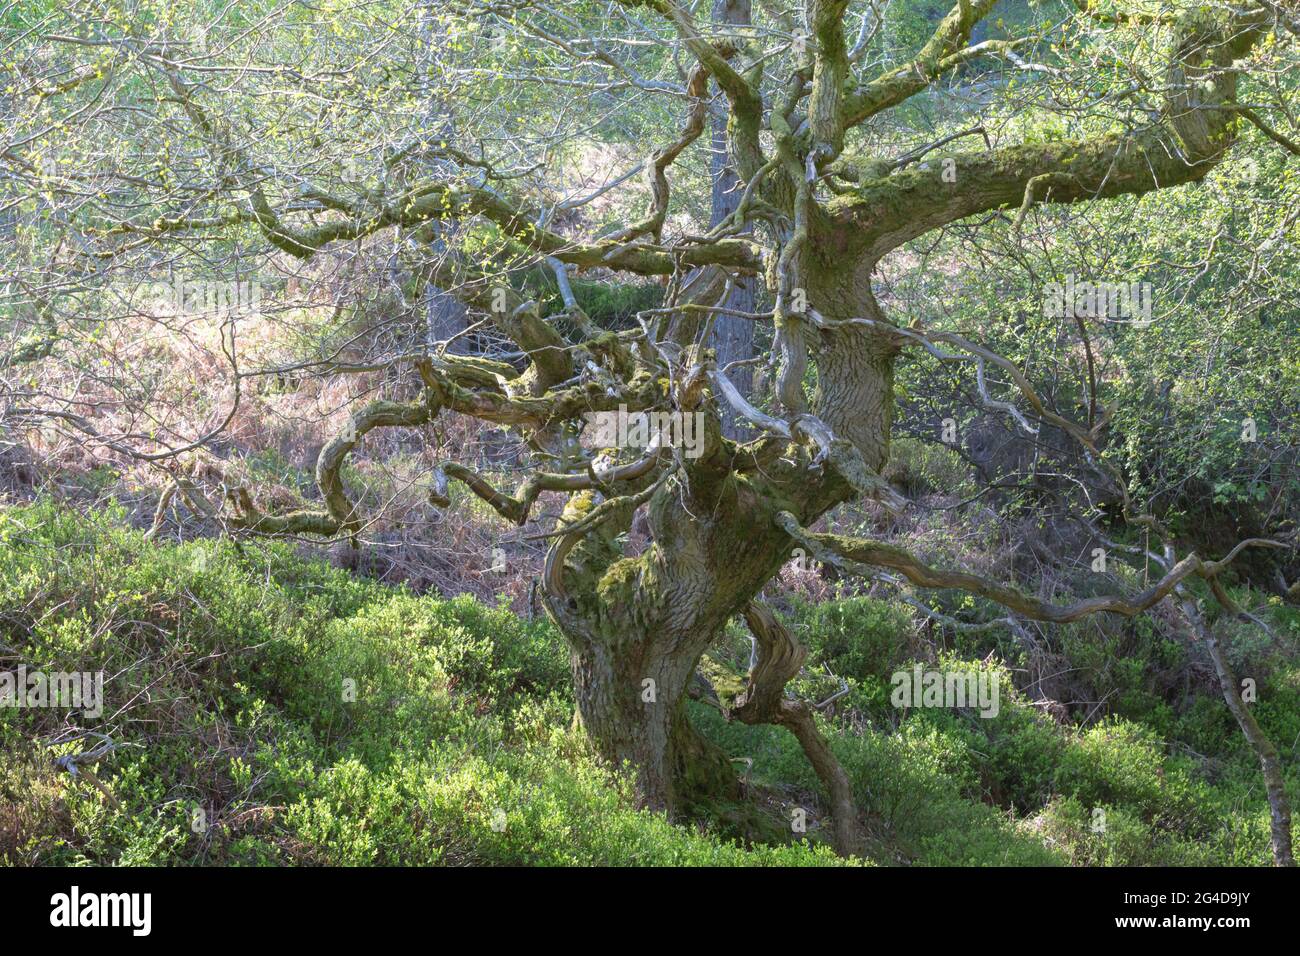 Torcido antiguo roble en un bosque en primavera, con nuevas hojas y musgo verde brillante en los troncos y ramas de los árboles. Foto de stock